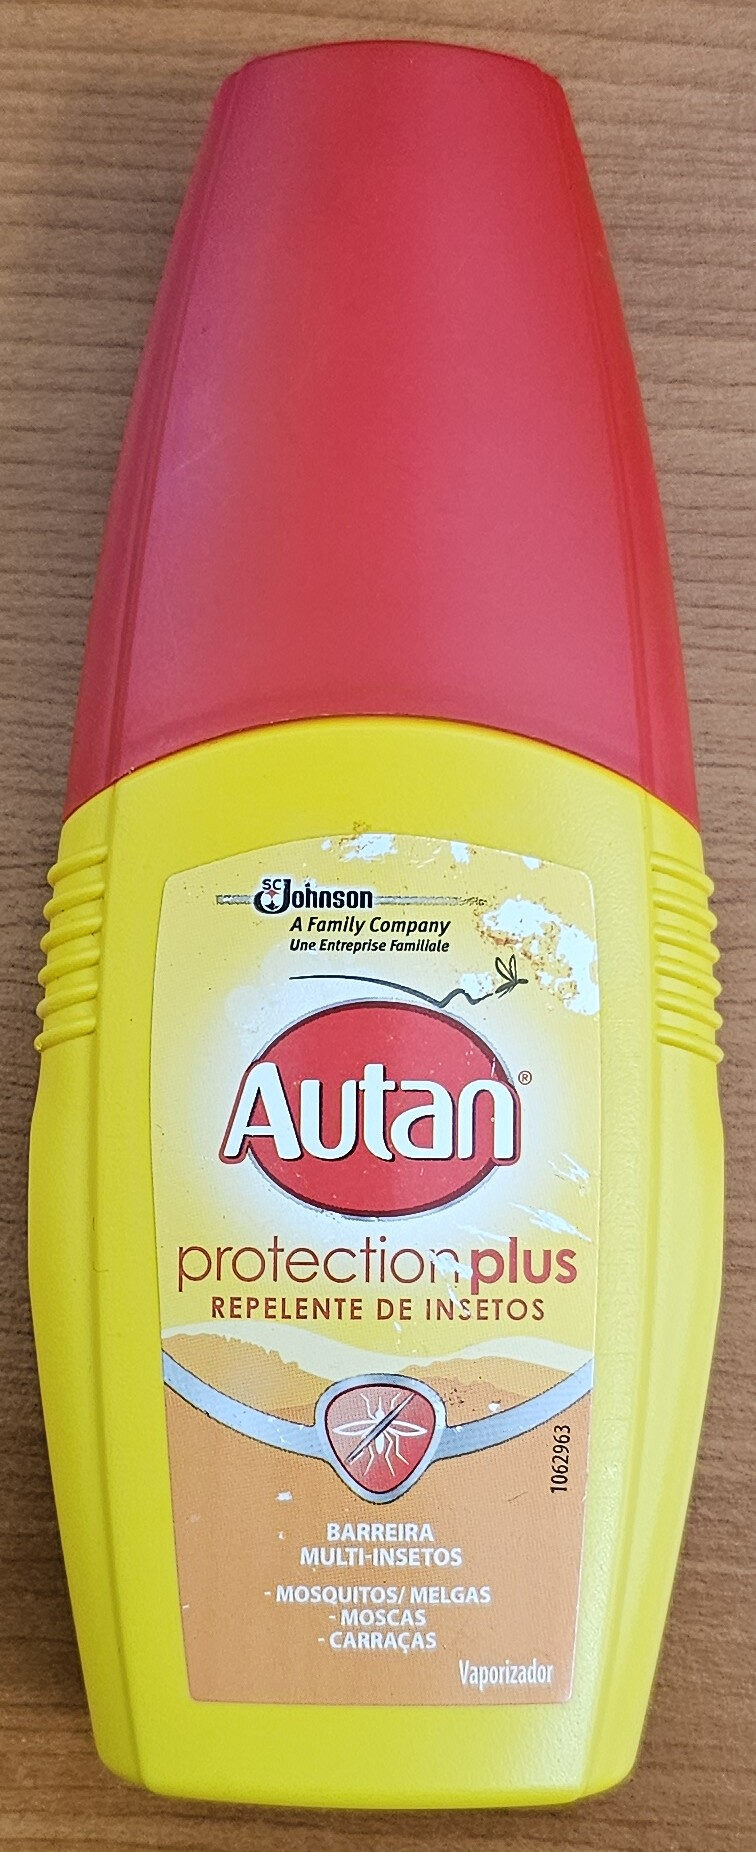 Autan - Produit - pt